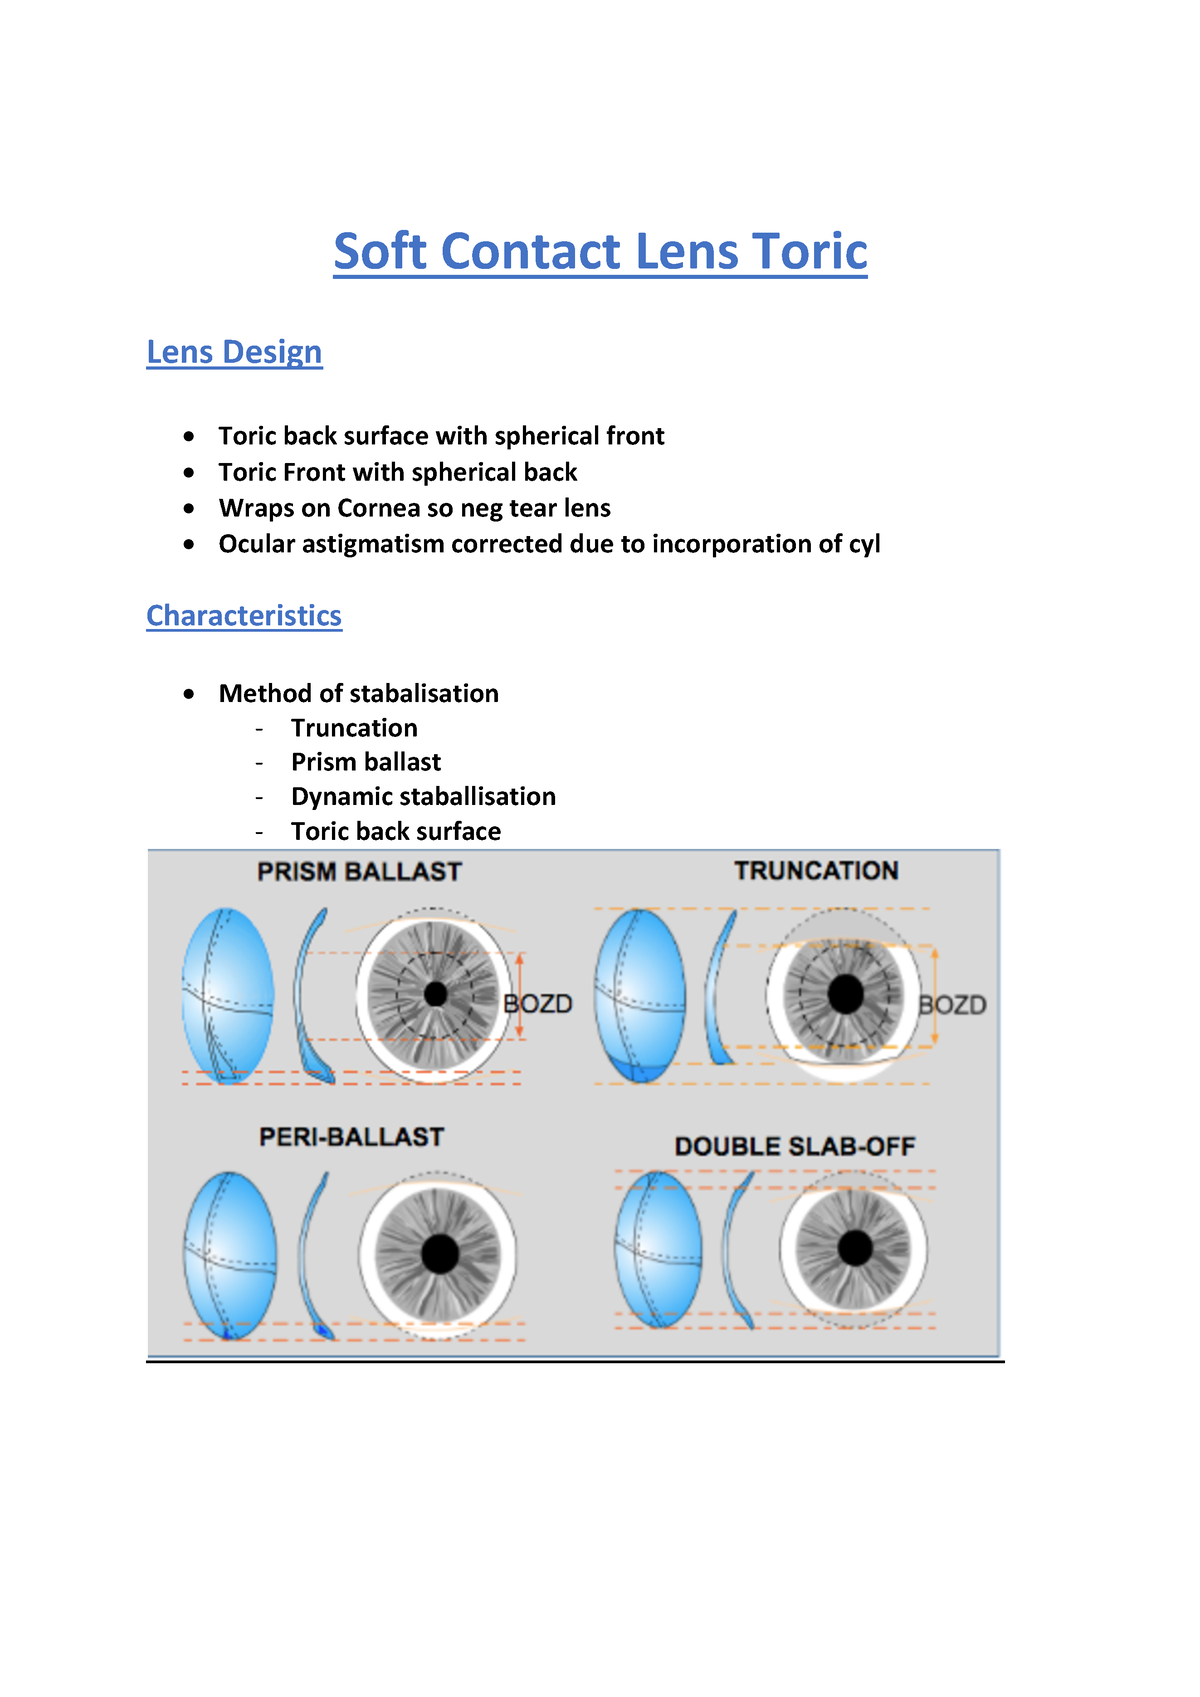 Contact Lens Toric - Soft Contact Lens Toric Lens Design Toric back ...